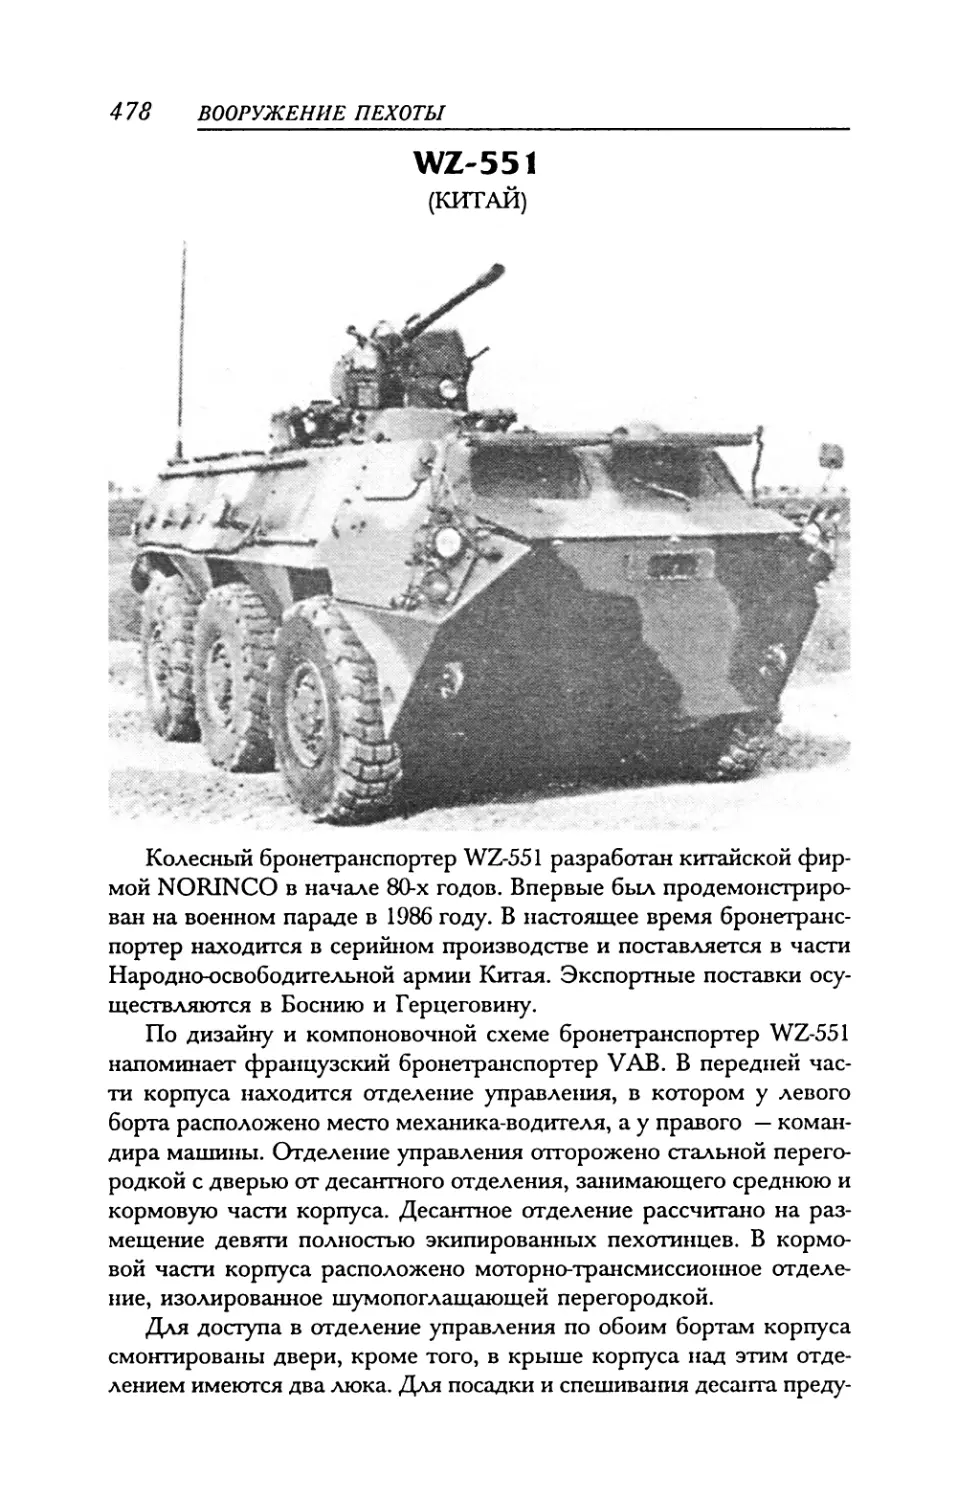 WZ-551